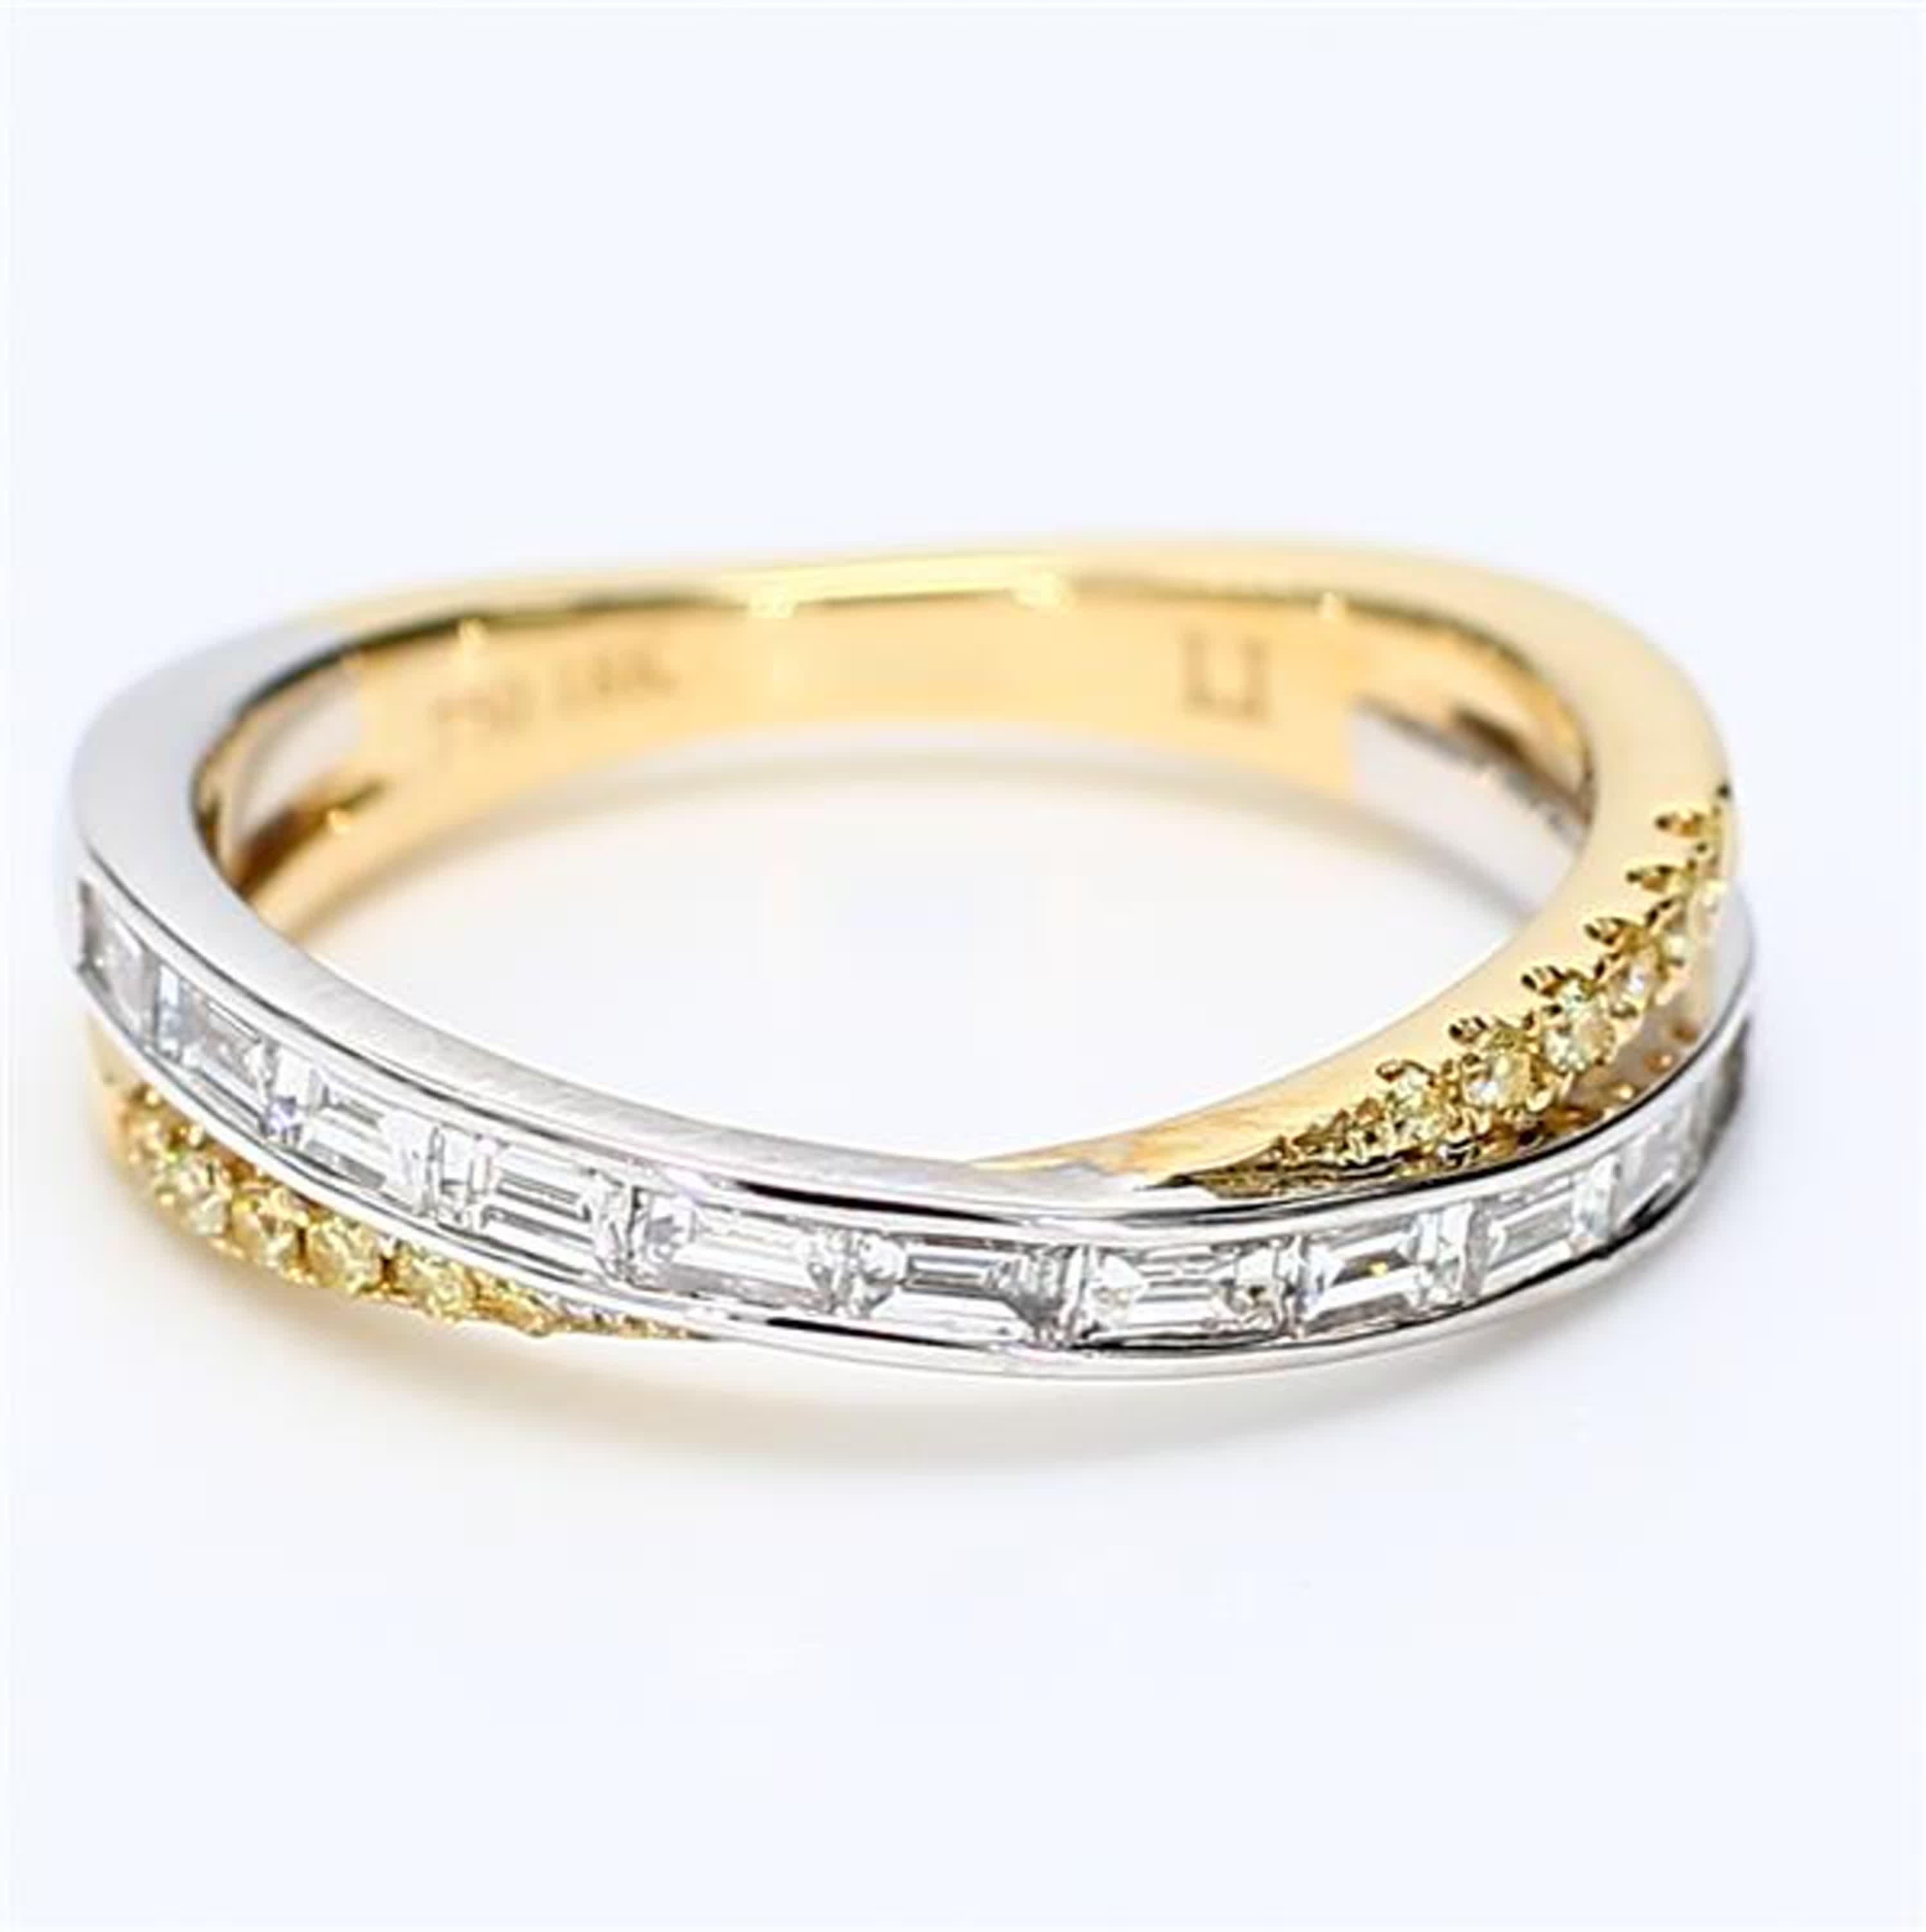 Le bracelet classique en diamants de Raregemworld. Monté dans une belle monture en or jaune et blanc 18 carats avec des diamants blancs baguettes naturels complétés par une mêlée de diamants jaunes ronds naturels. Cette bague est garantie pour